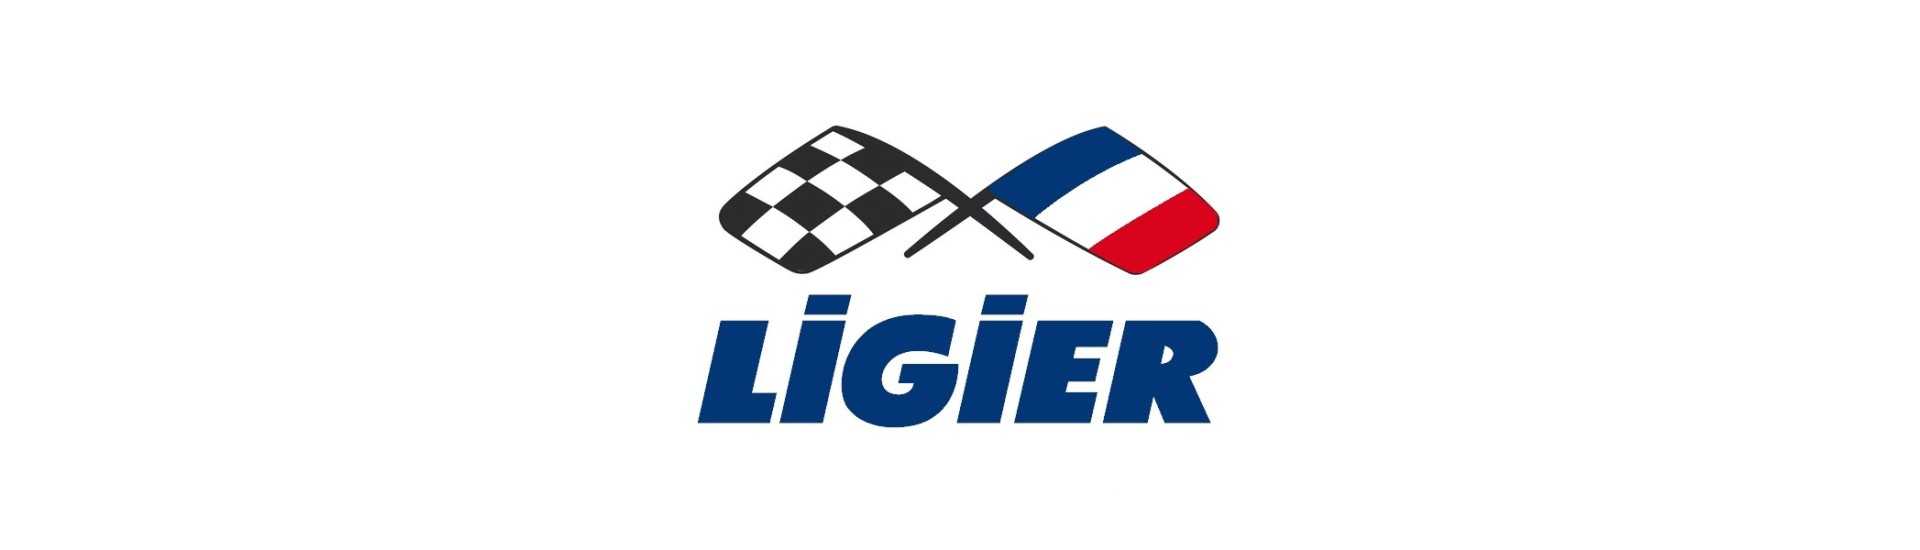 Paras hinnastokaapeli autoon ilman lupaa Ligier